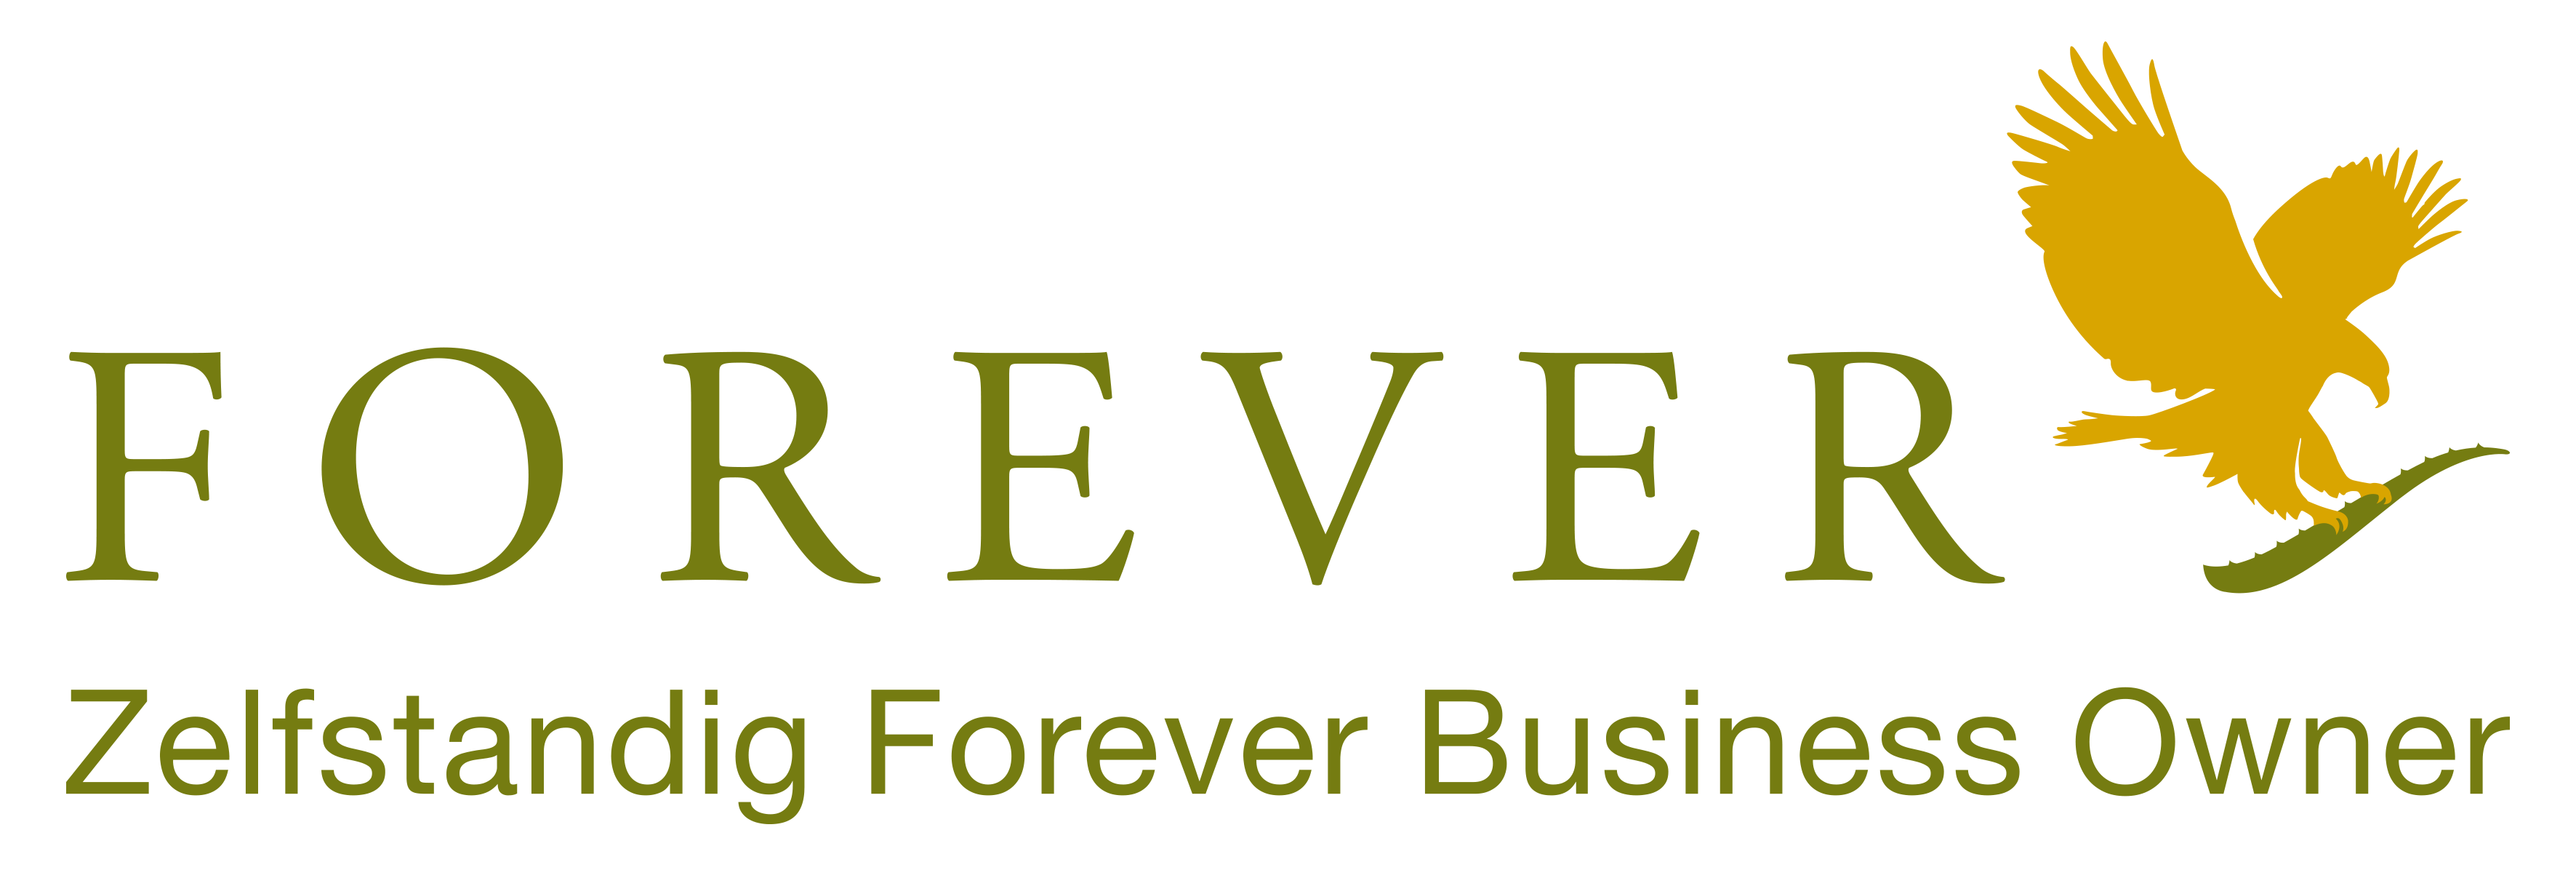 Forever Aloe vera suministra productos Forever a clientes en Benelus y Francia como Empresario Independiente de Forever Living. Compre sus productos Forever Living en Bélgica, Países Bajos, Luxemburgo y Francia